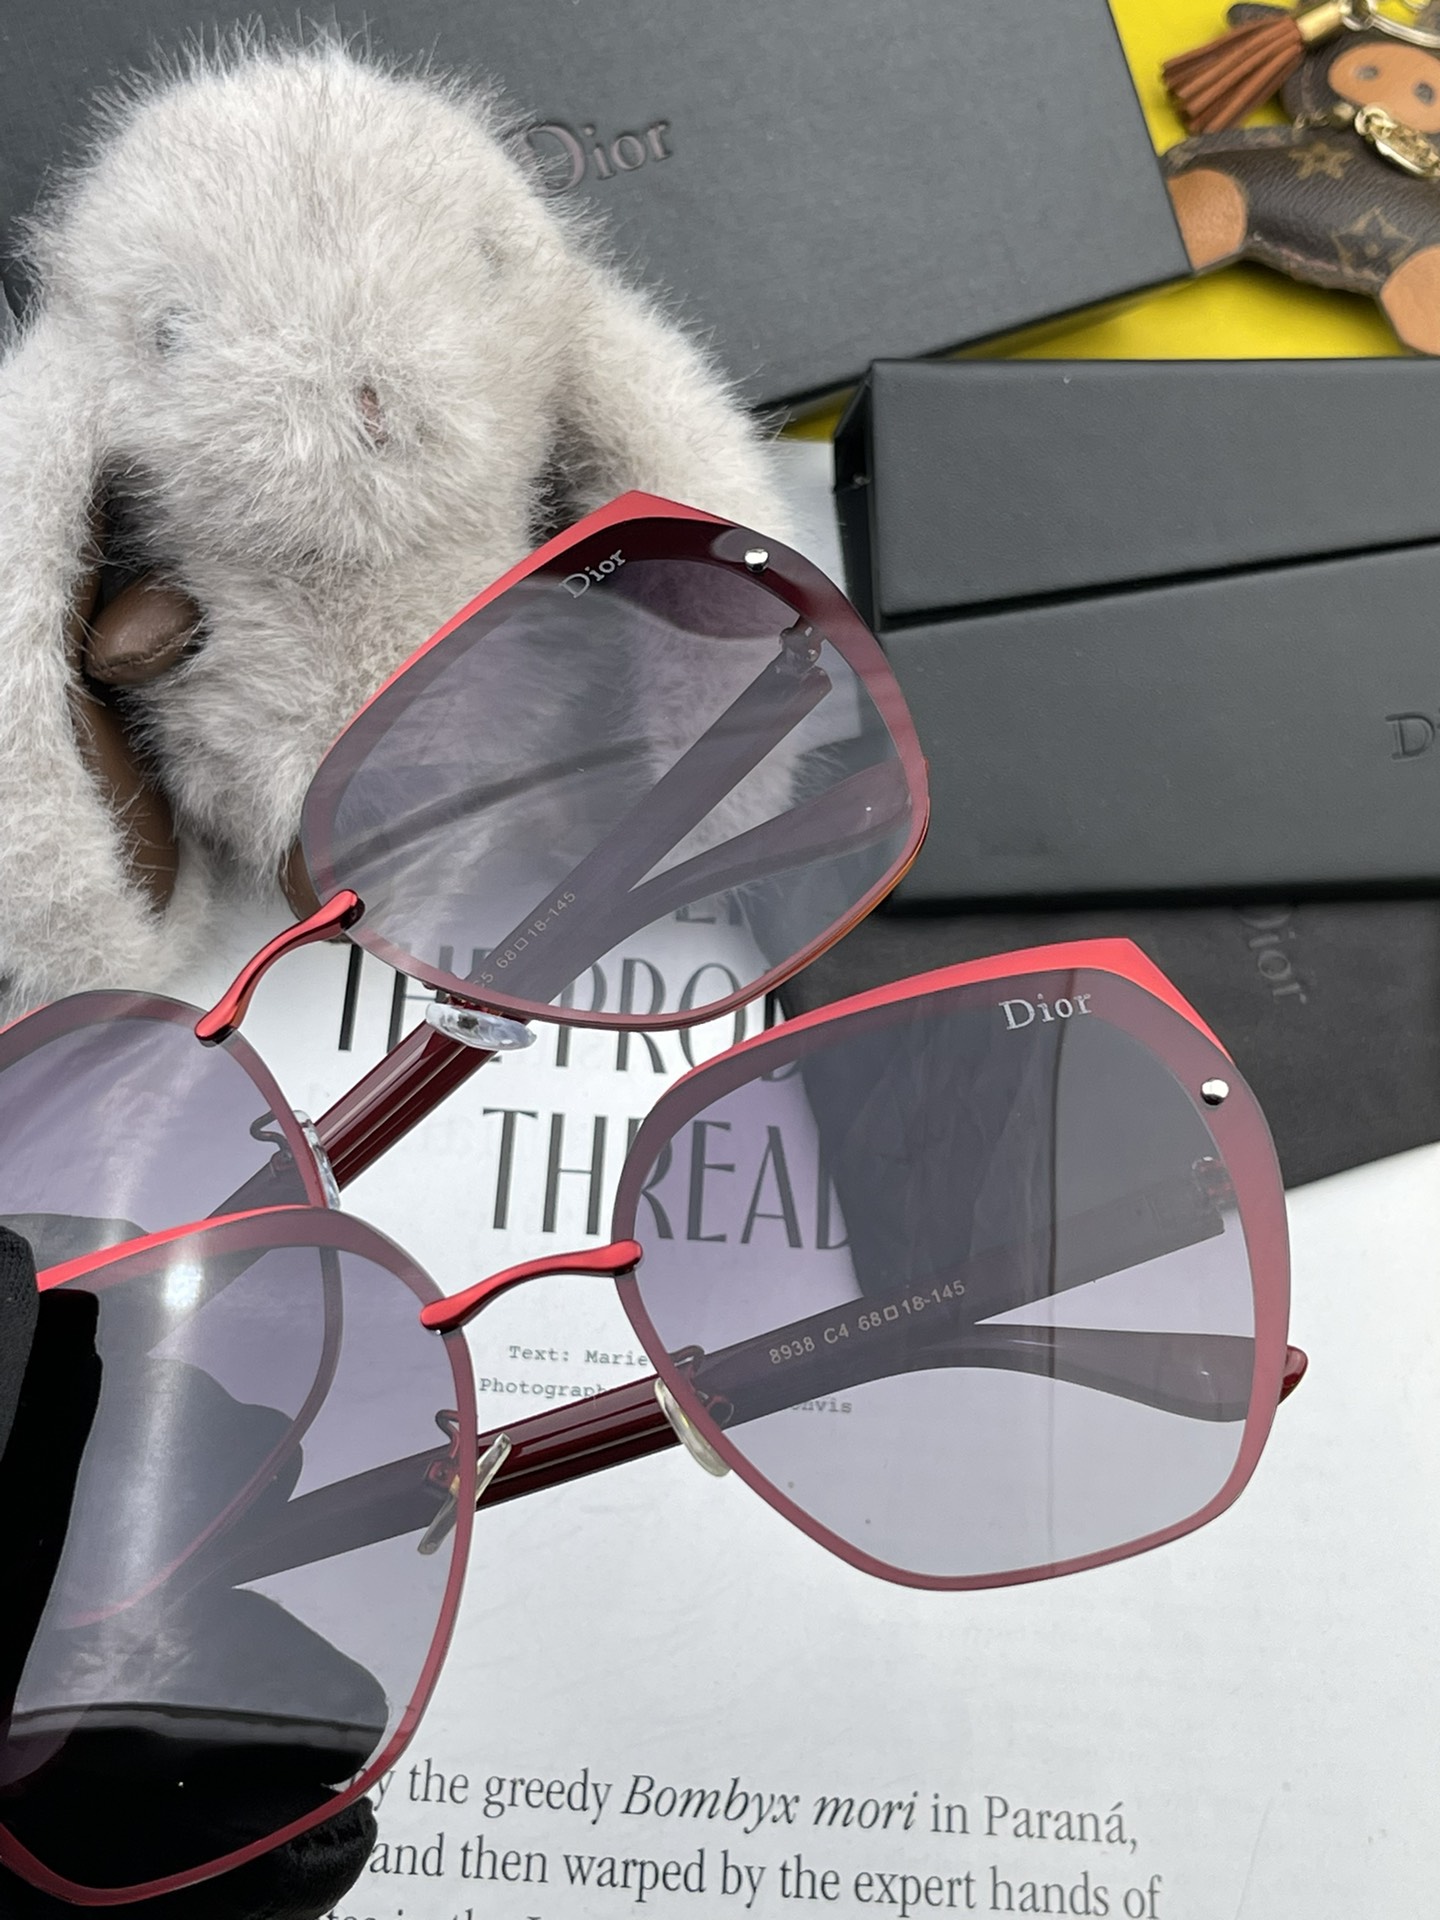 TR版本-偏光独家大牌太阳镜无滤镜实拍上架Dior官网最新发布新款太阳镜注意我们是高清镜片到货随意验货型